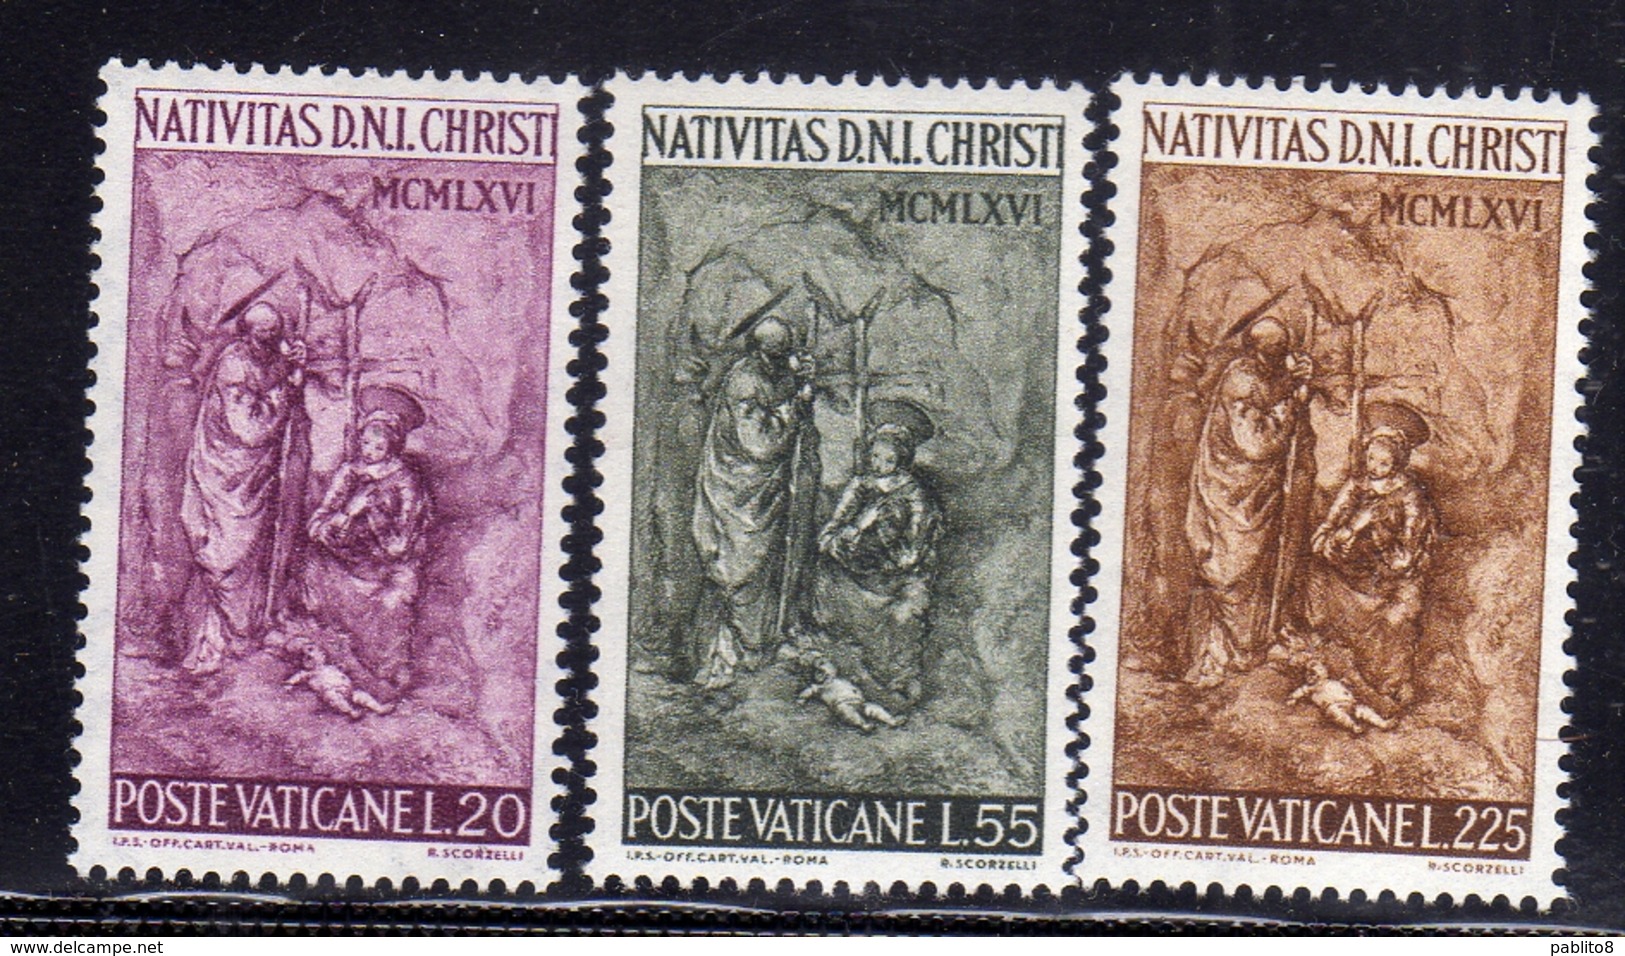 CITTÀ DEL VATICANO VATICAN VATIKAN 1966 NATALE CHRISTMAS NOEL WEIHNACHTEN SERIE COMPLETA COMPLETE SET MNH - Unused Stamps